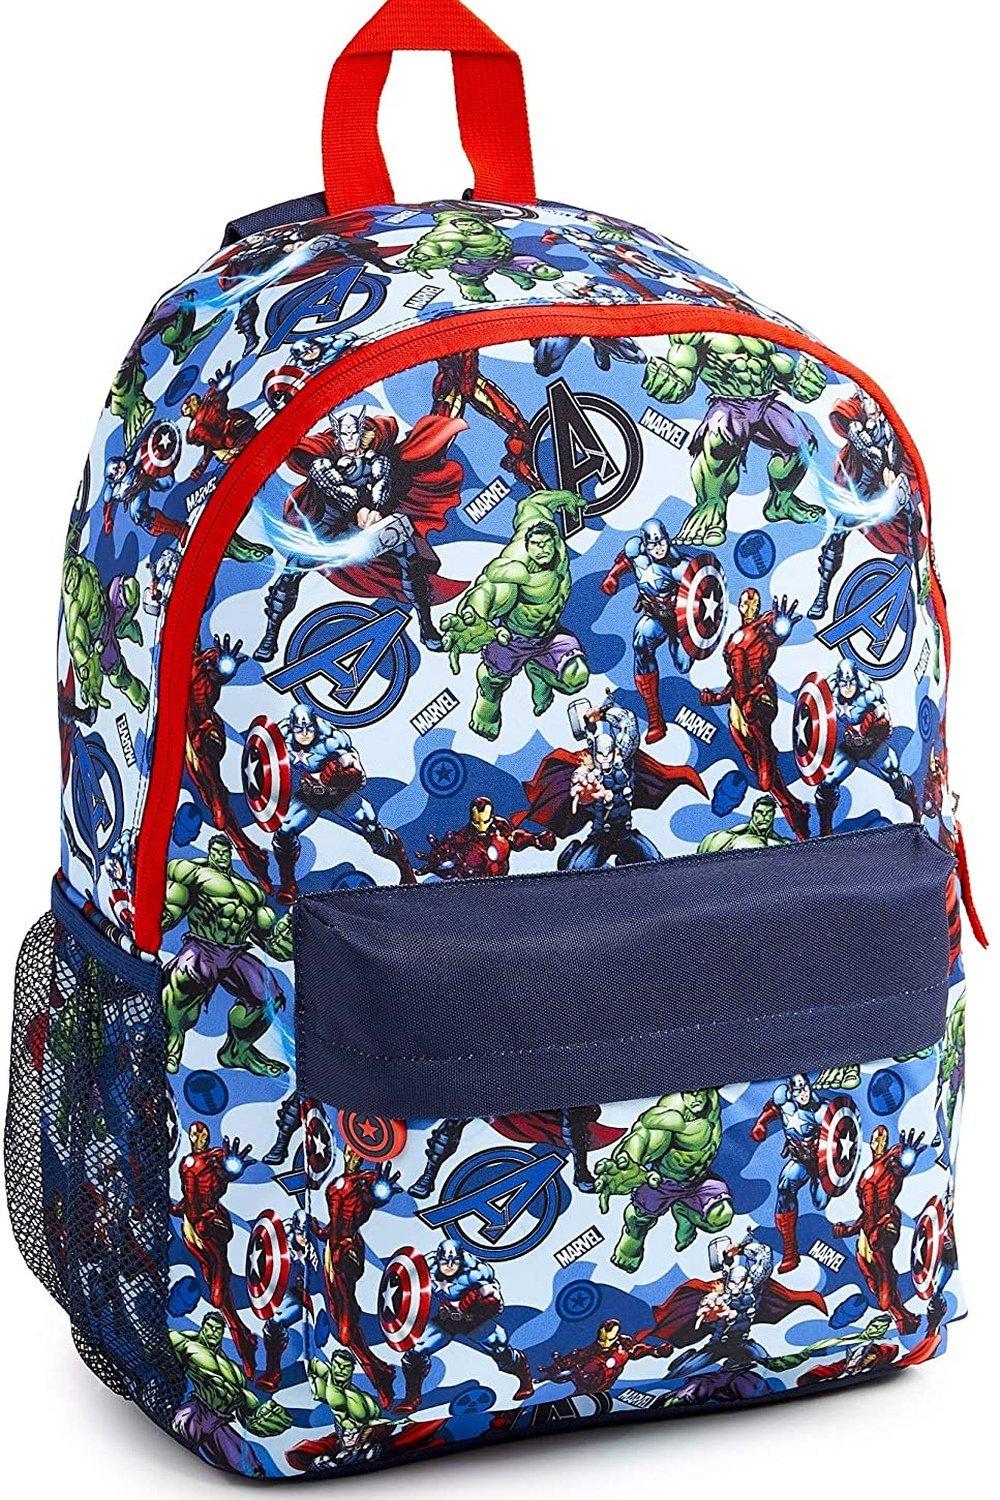 Большой рюкзак Avengers Superheros Marvel, синий детский рюкзак мстителей avengers синий